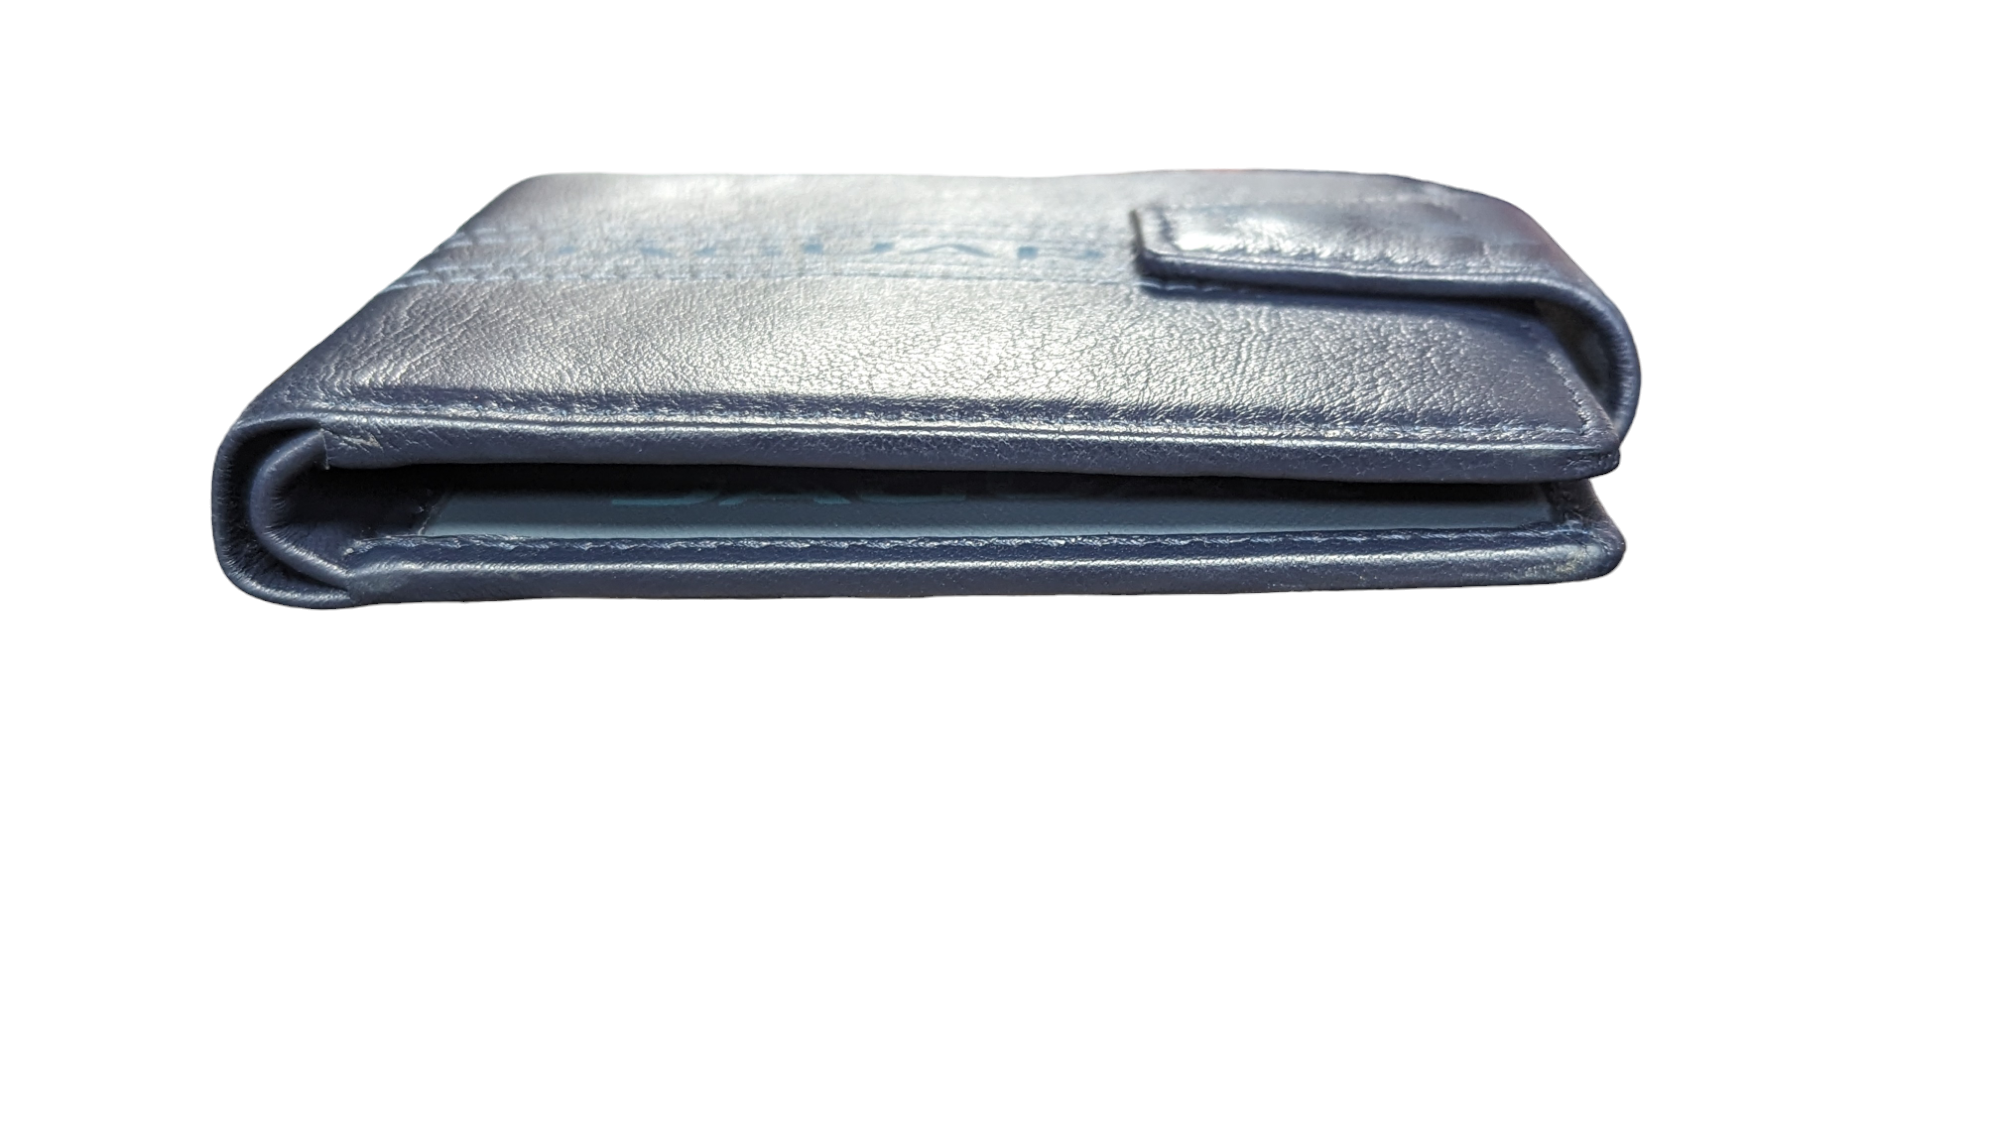 Black Genuine Leather, Slim, Light, Jaguar inspired Wallet Swolit RFID Blocker Gift Boxed